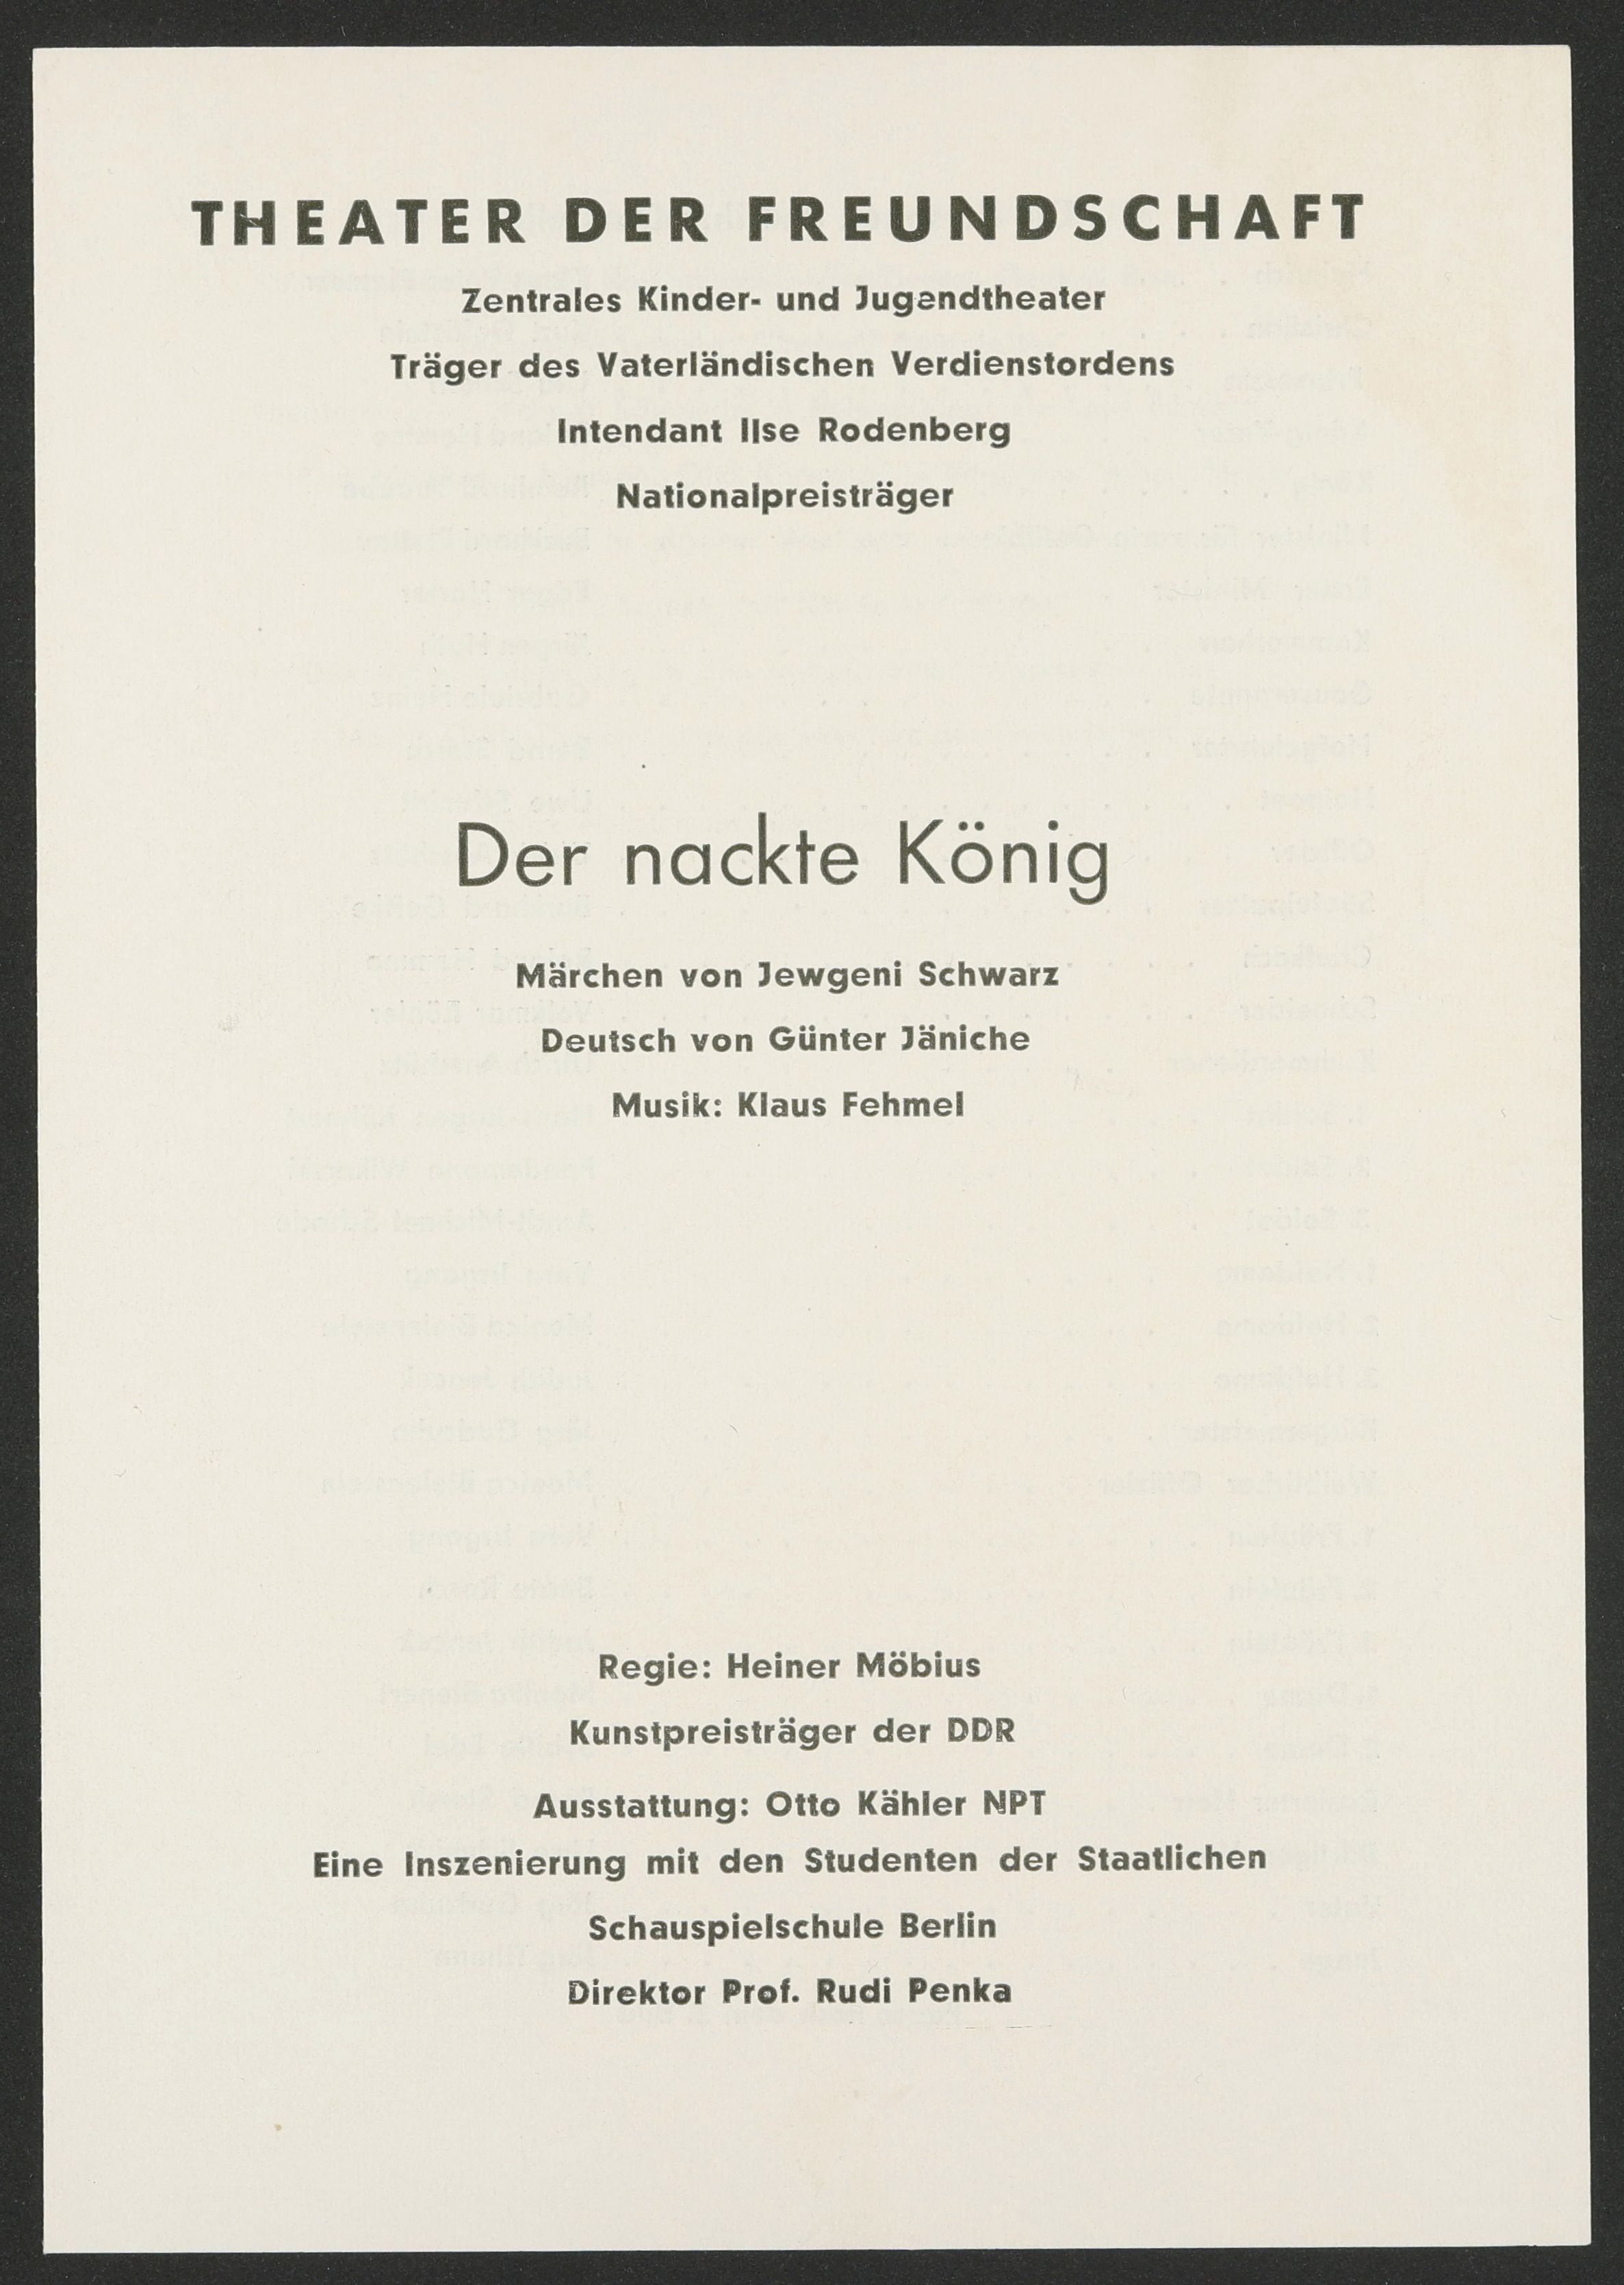 Programmheft zu "Der nackte König" am Theater der Freundschaft 1970 (Hochschule für Schauspielkunst Ernst Busch Berlin RR-F)